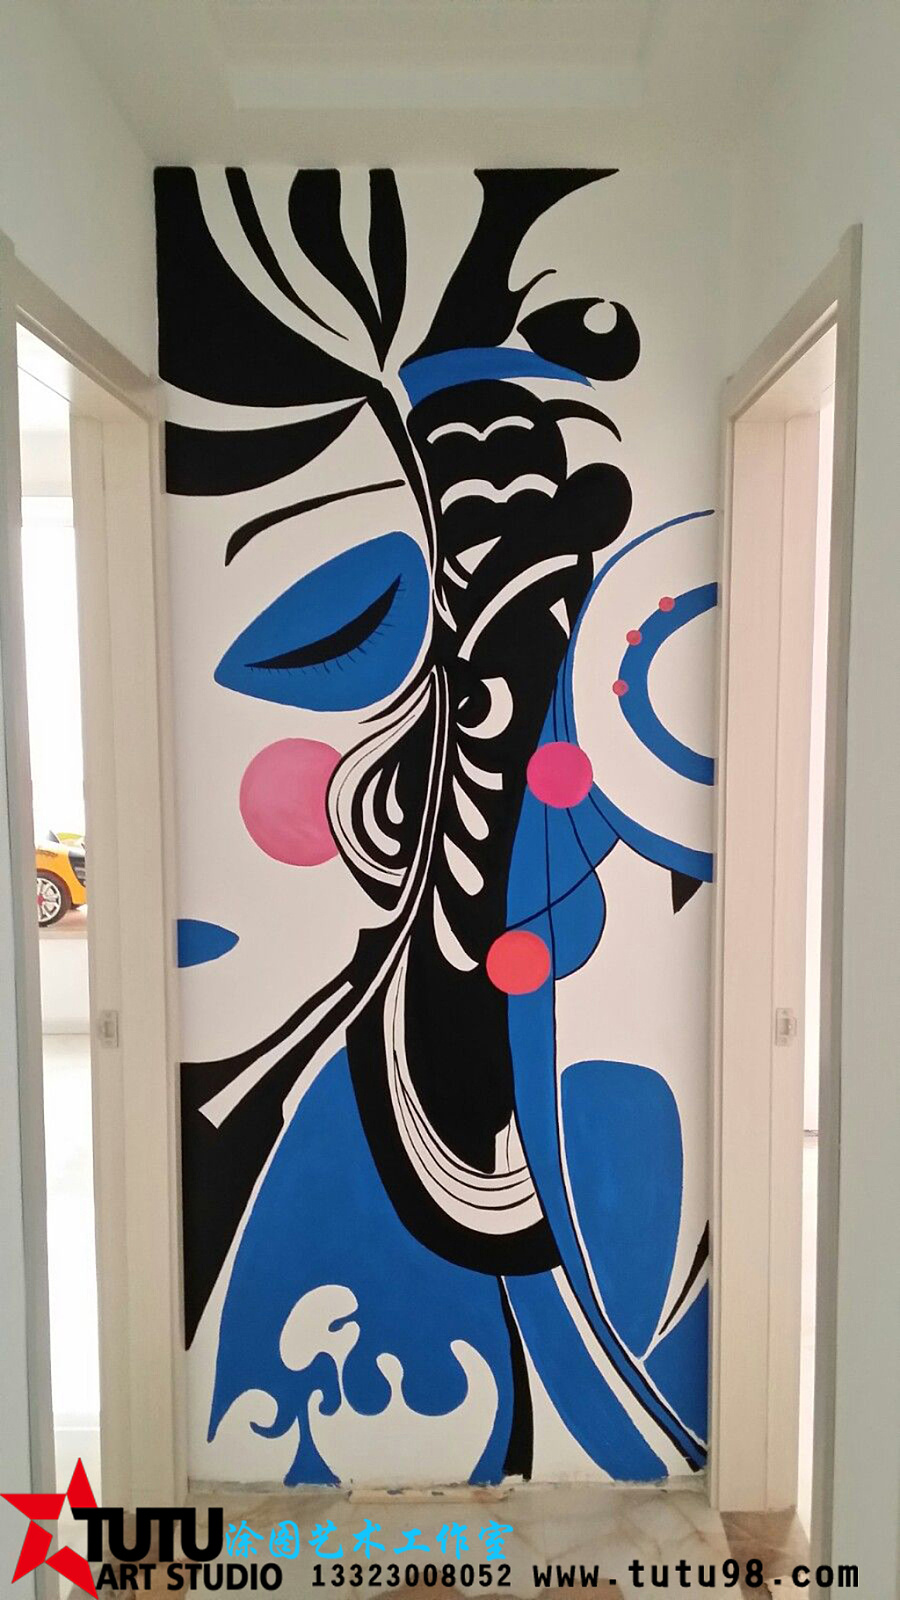 [玄关过道] 邯郸墙体彩绘 走廊墙绘 走廊彩绘 京剧抽象彩绘 邯郸涂图